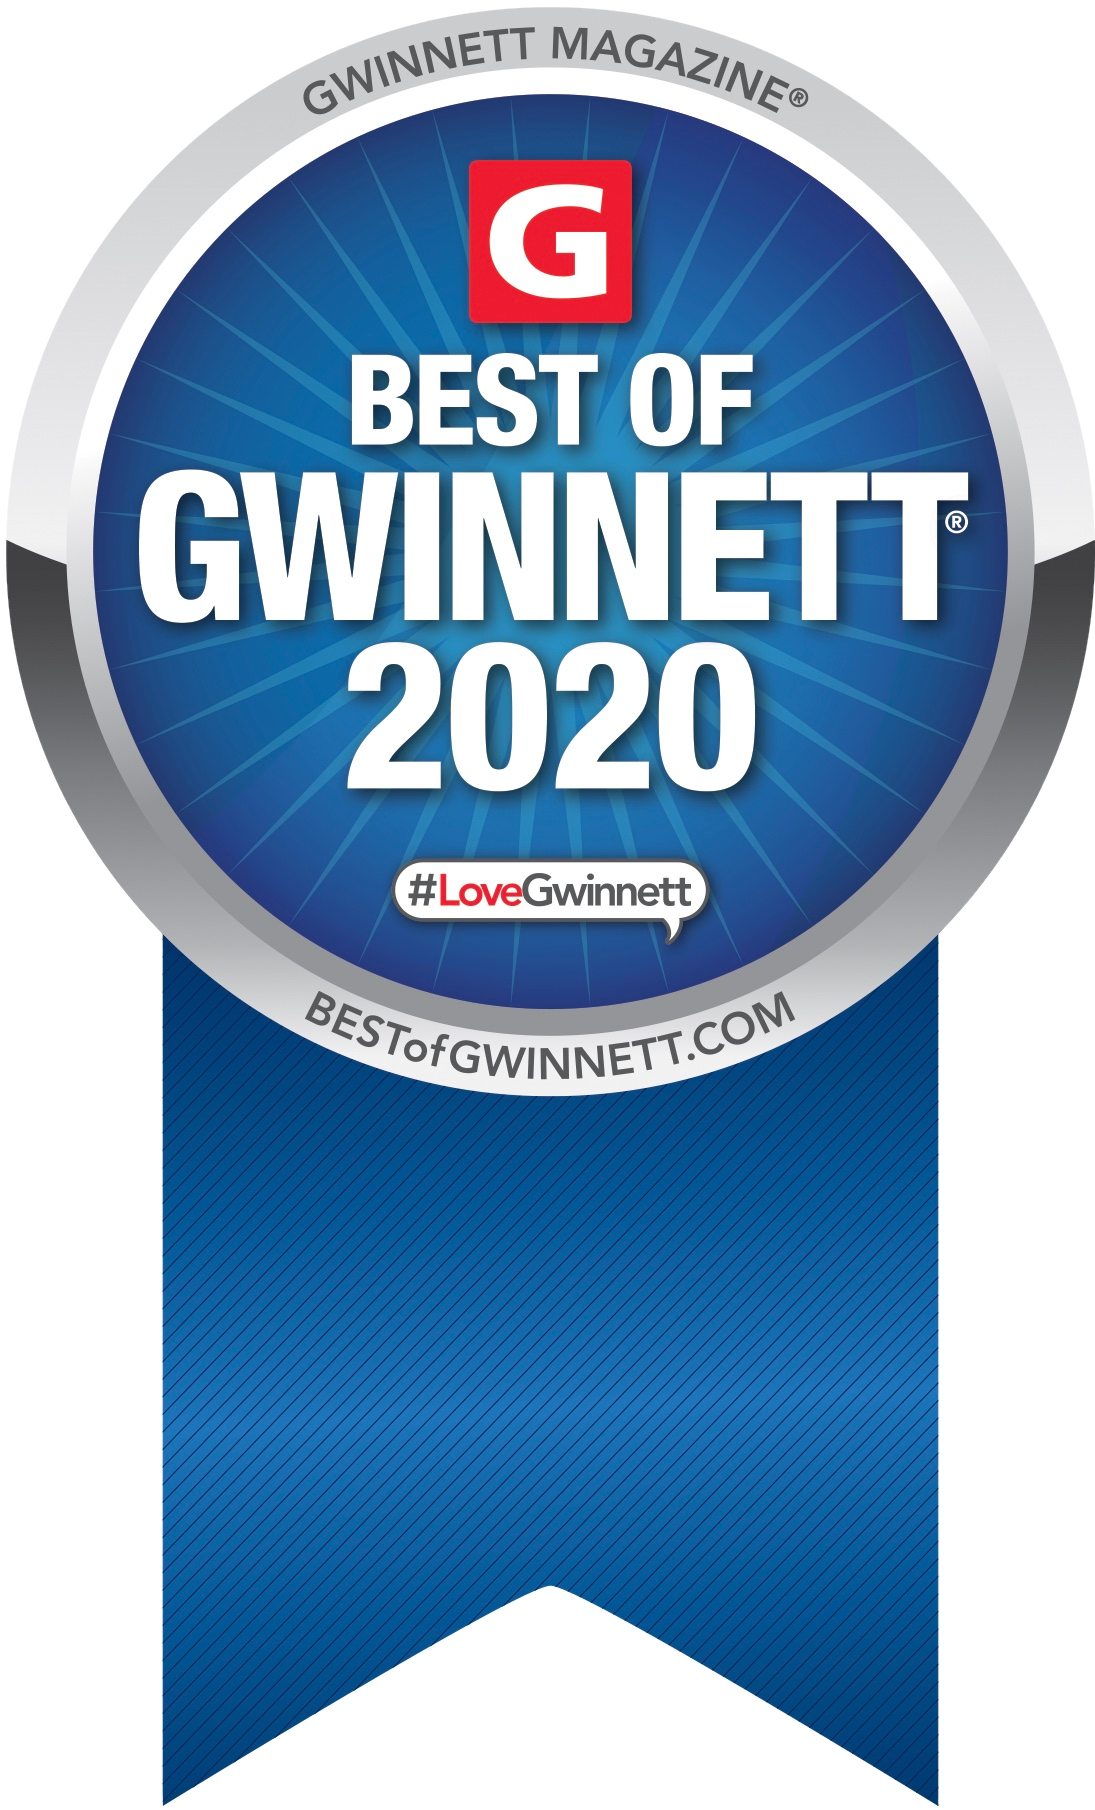 Best of Gwinnett 2020 Award